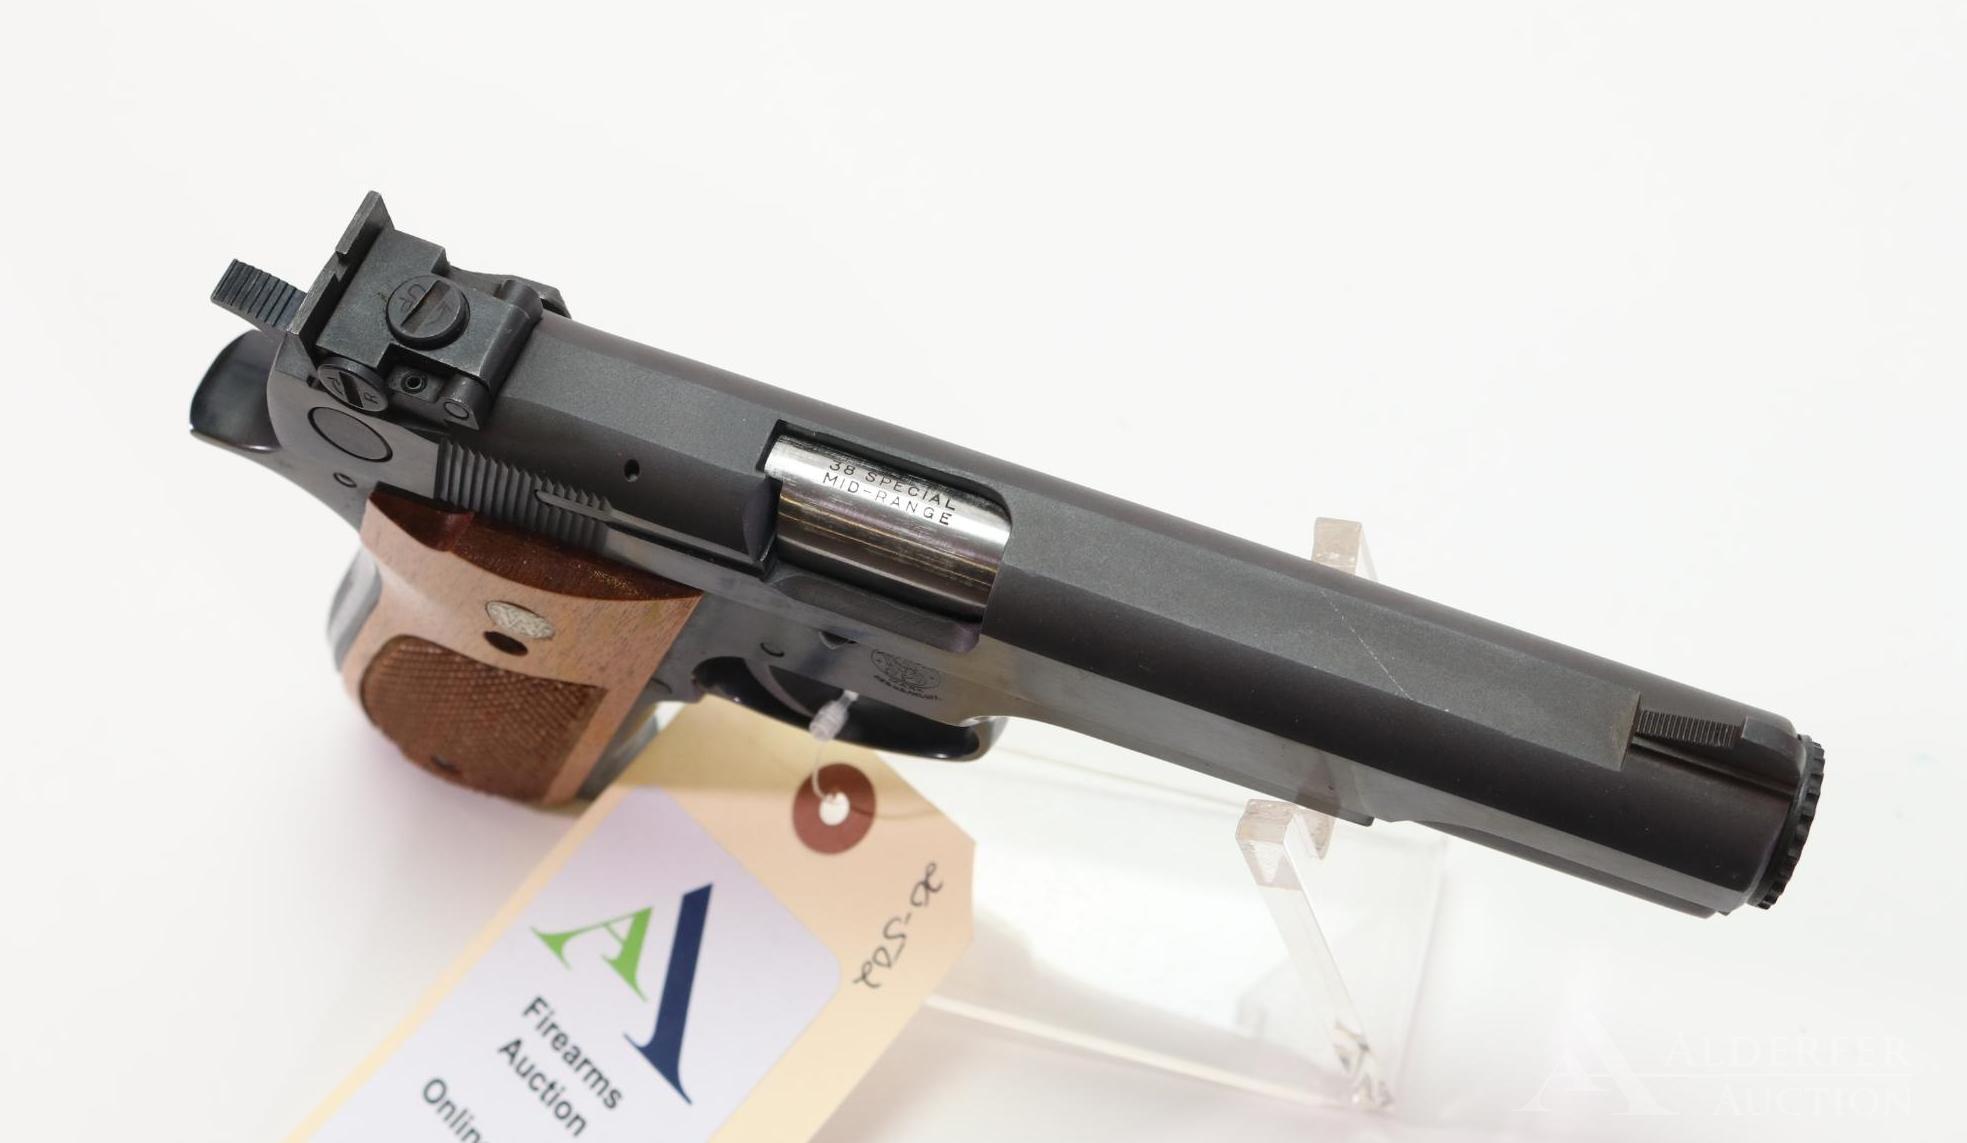 Smith & Wesson 52-2 Semi-Automatic Pistol.